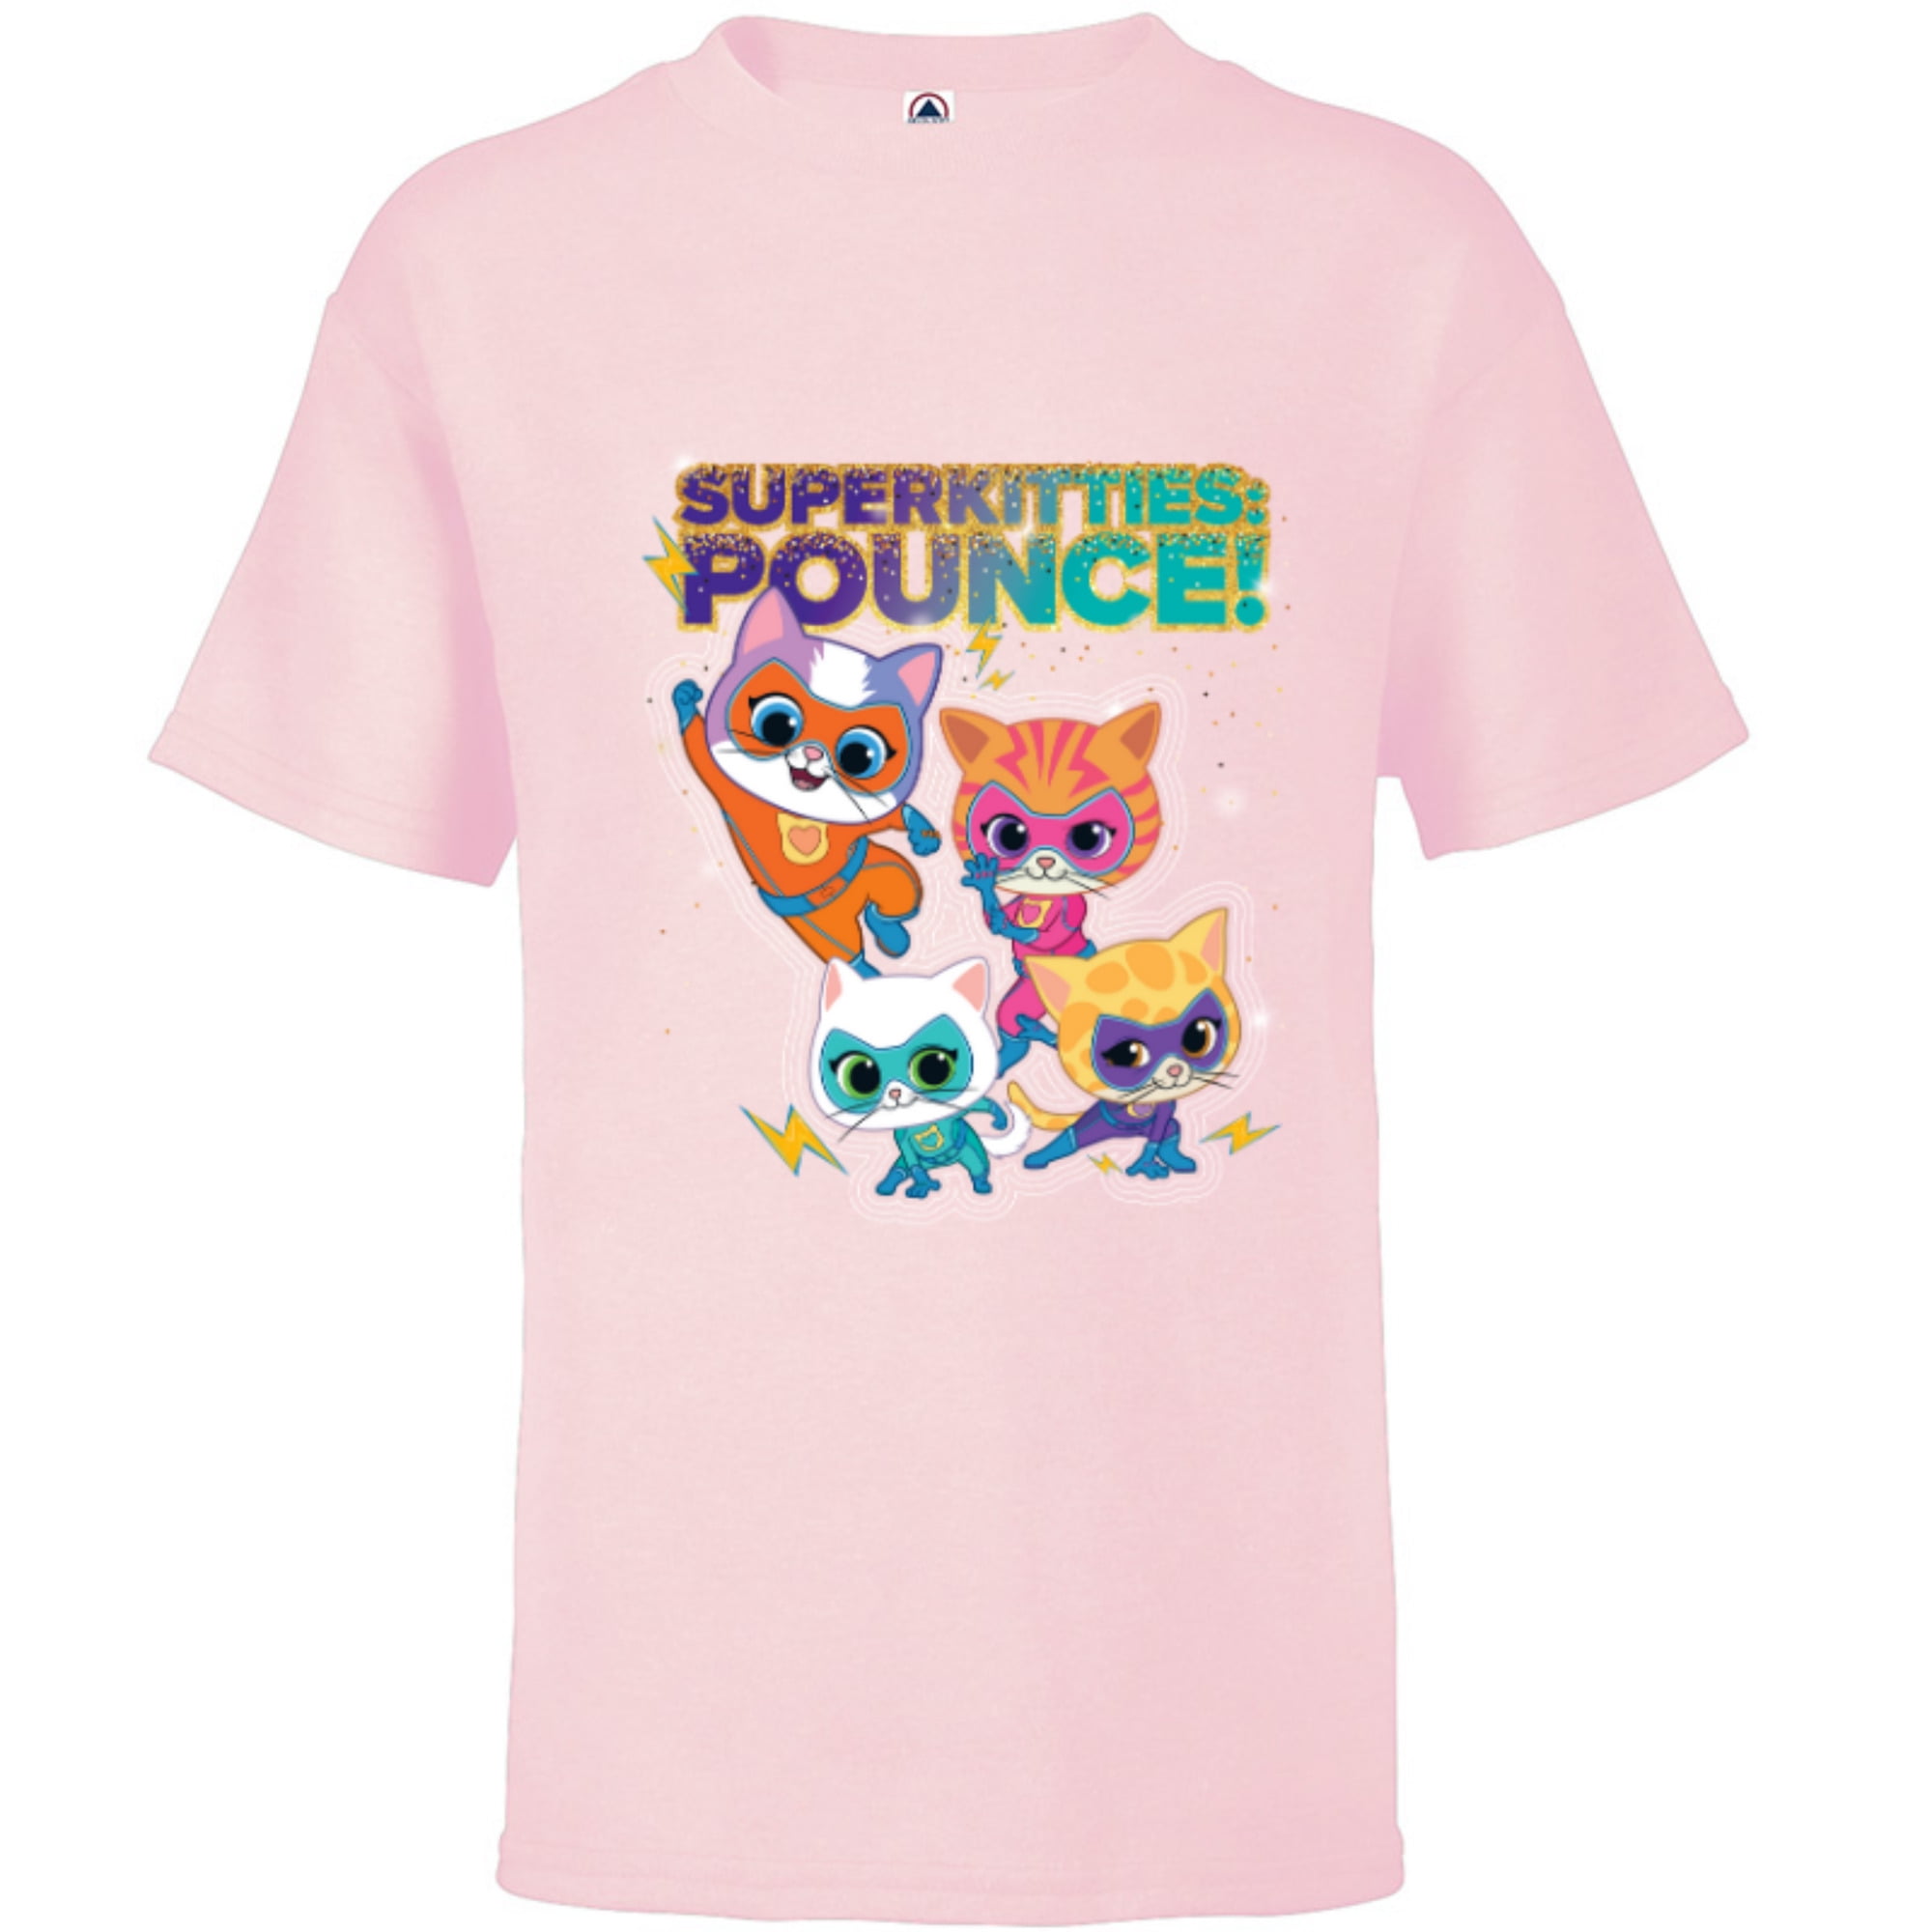 Disney Junior SuperKitties Pounce! Full Team - Short Sleeve T-Shirt for ...